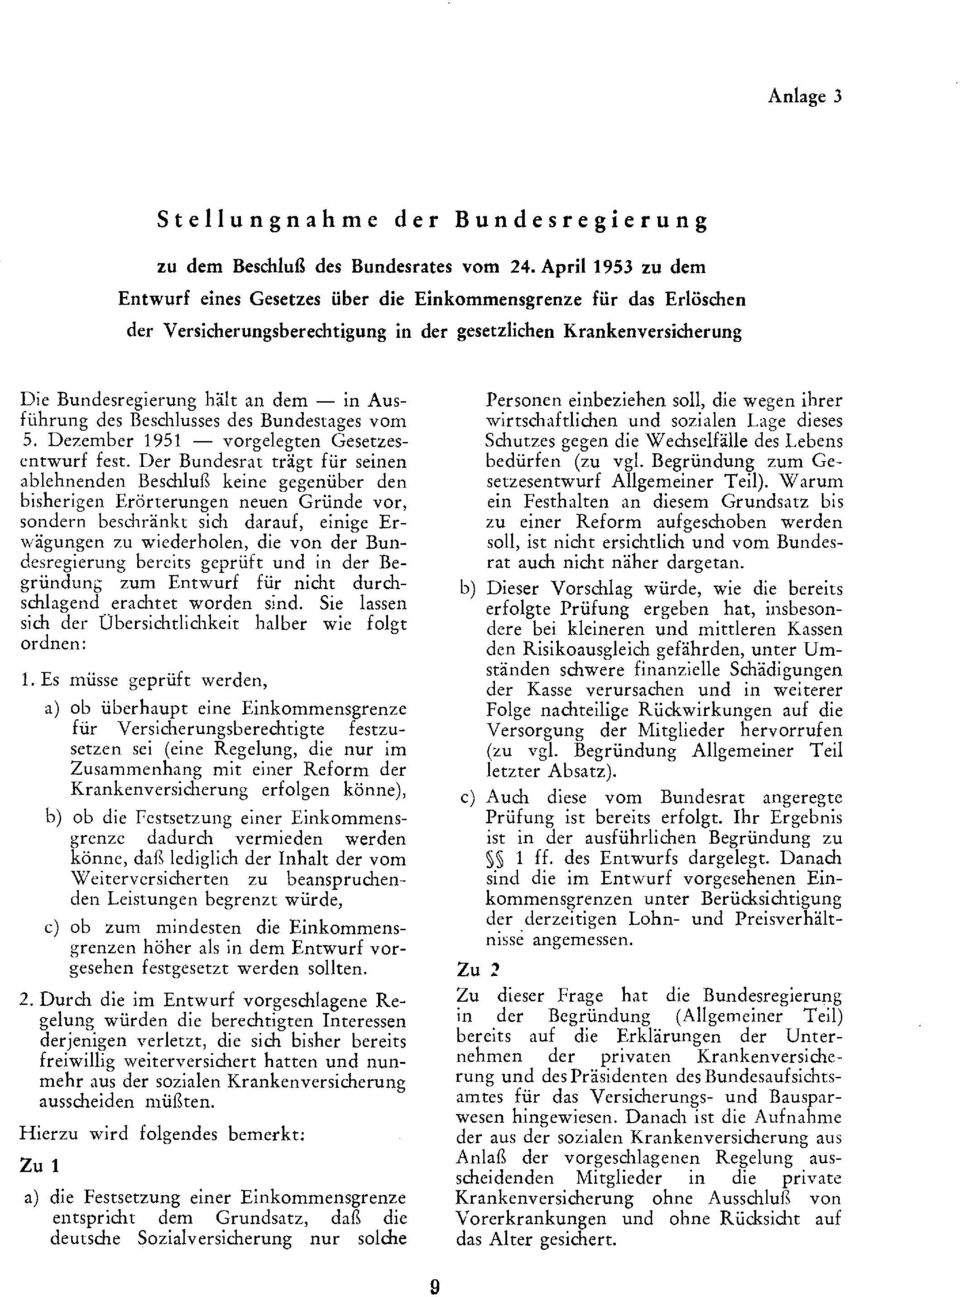 Ausführung des Beschlusses des Bundestages vom 5. Dezember 1951 vorgelegten Gesetzes entwurf fest.